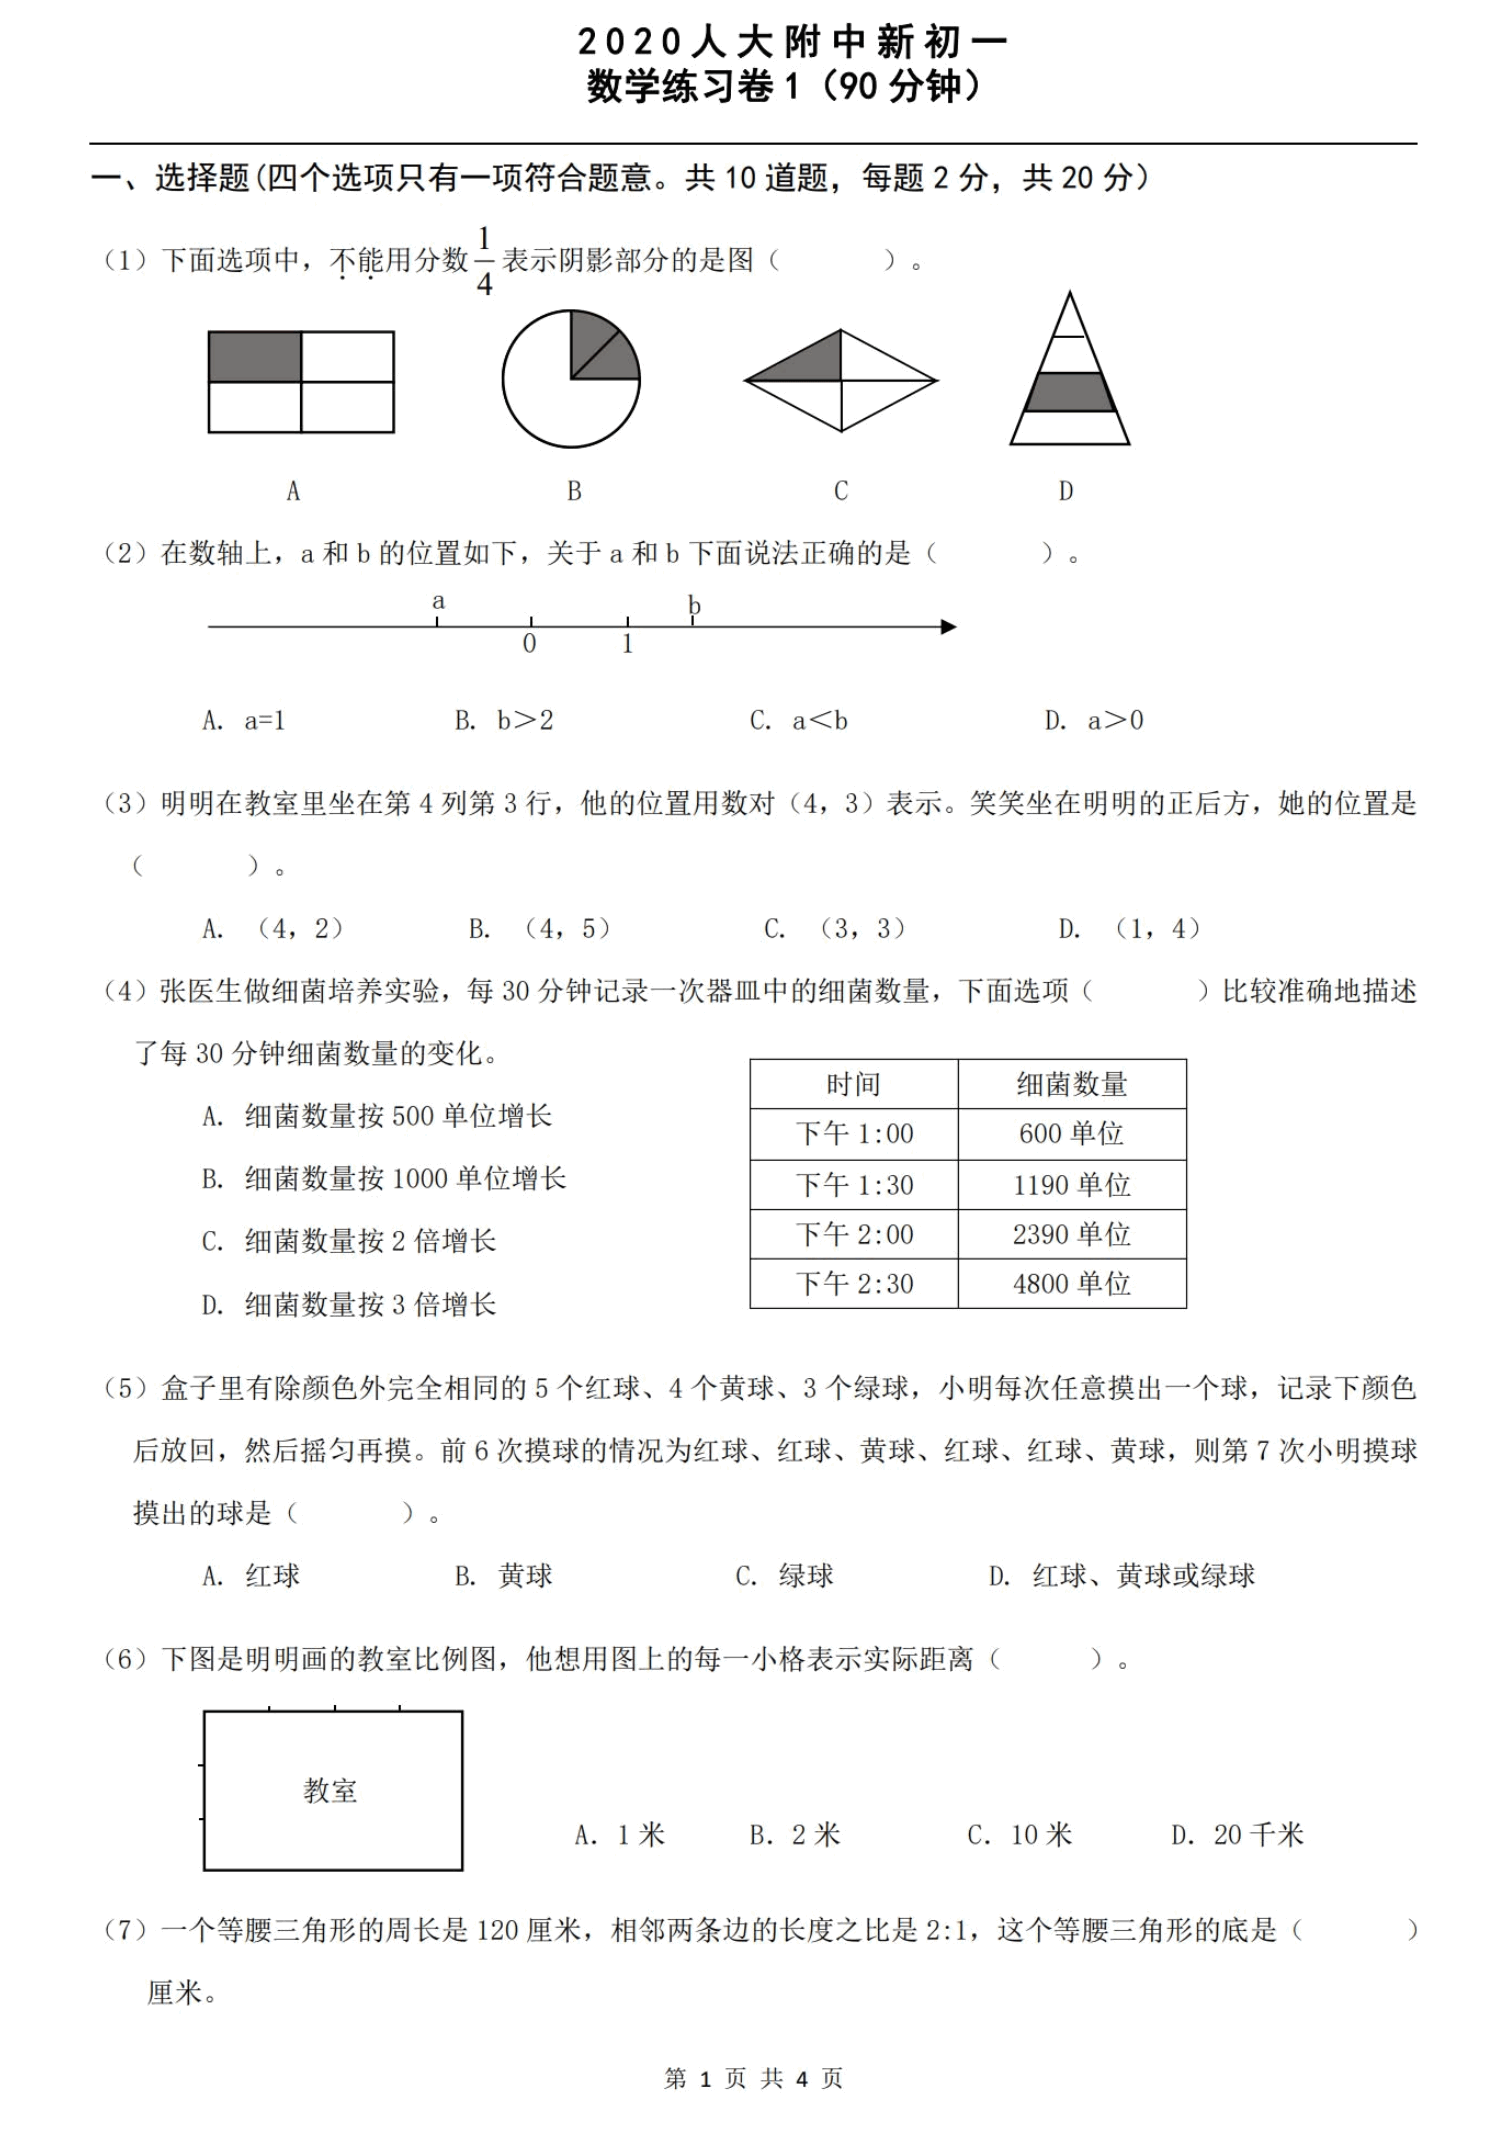 北京市中学初一分班考试题分享包括人大附中101四中